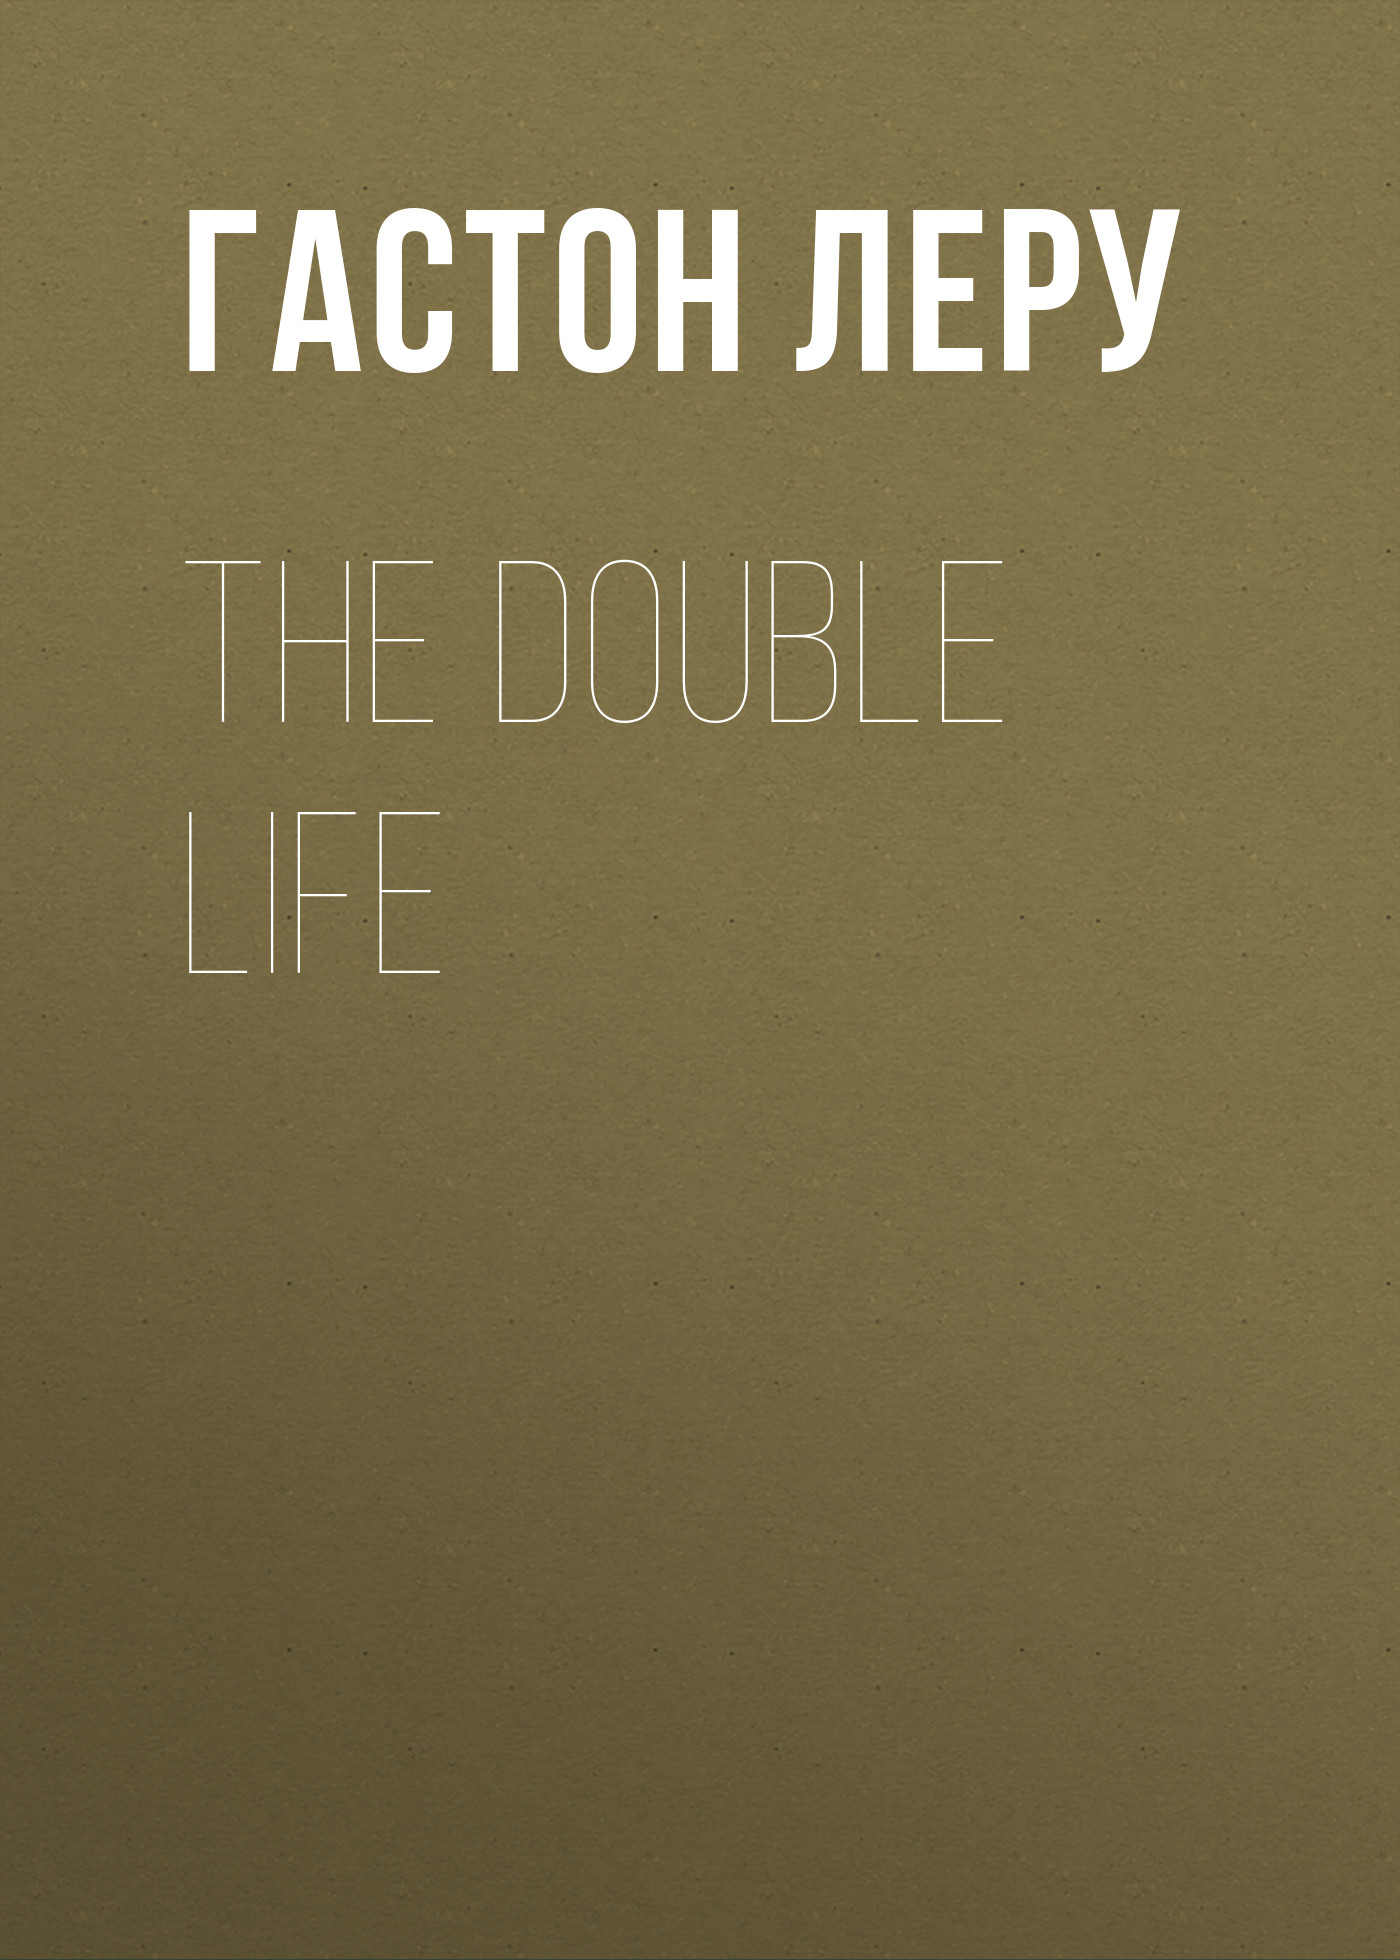 Книга The Double Life из серии , созданная Гастон Леру, может относится к жанру Литература 20 века, Классические детективы, Зарубежные детективы. Стоимость электронной книги The Double Life с идентификатором 34841406 составляет 0 руб.